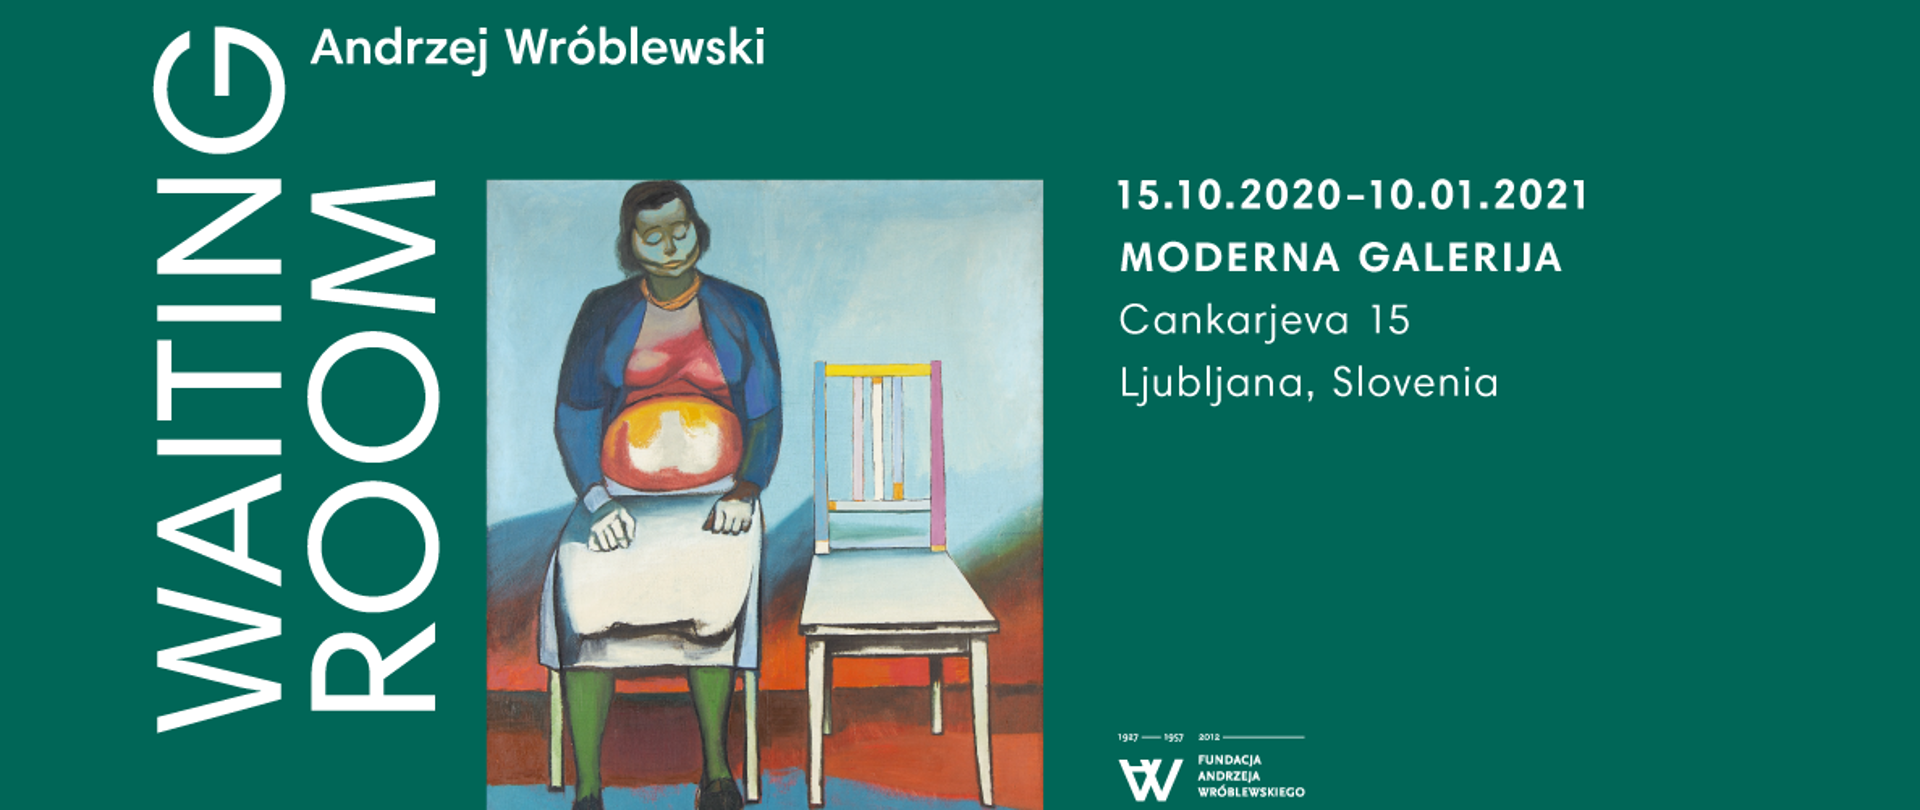 Wystawa prac Andrzeja Wróblewskiego w Moderna Galerija w Lublanie